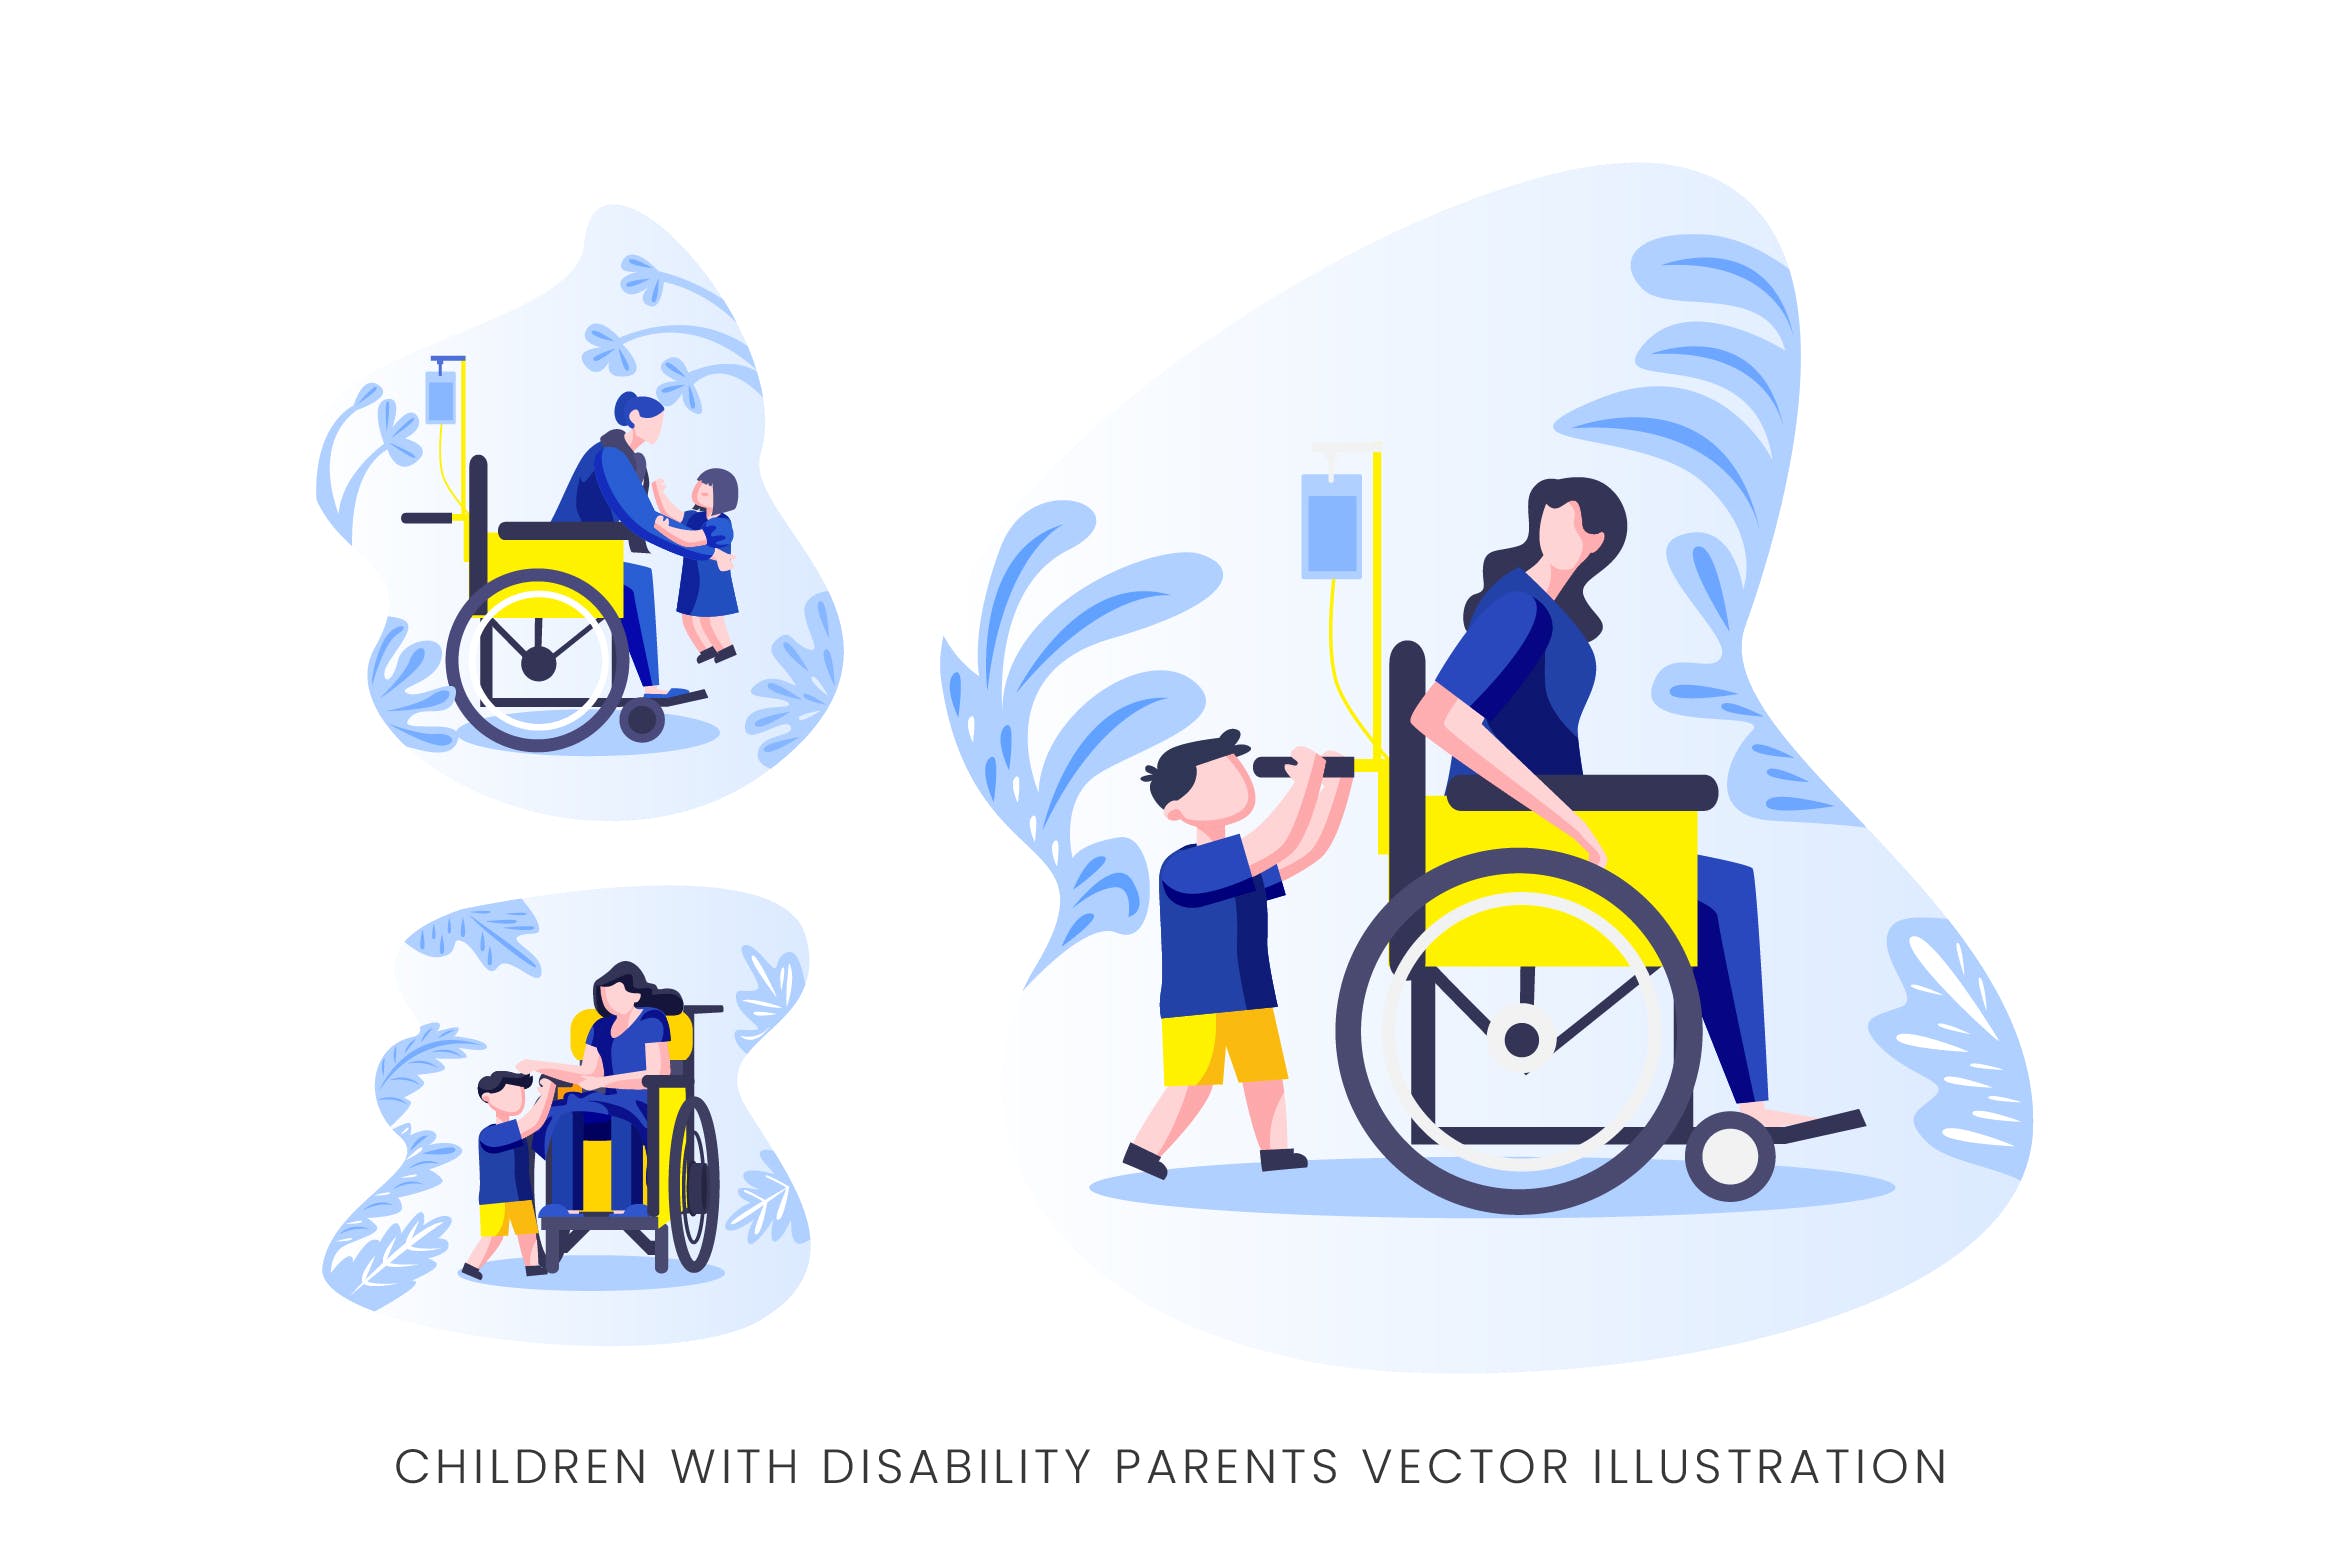 伤残人士与儿童人物形象第一素材精选手绘插画矢量素材 Children With Disability Parents Vector Character插图